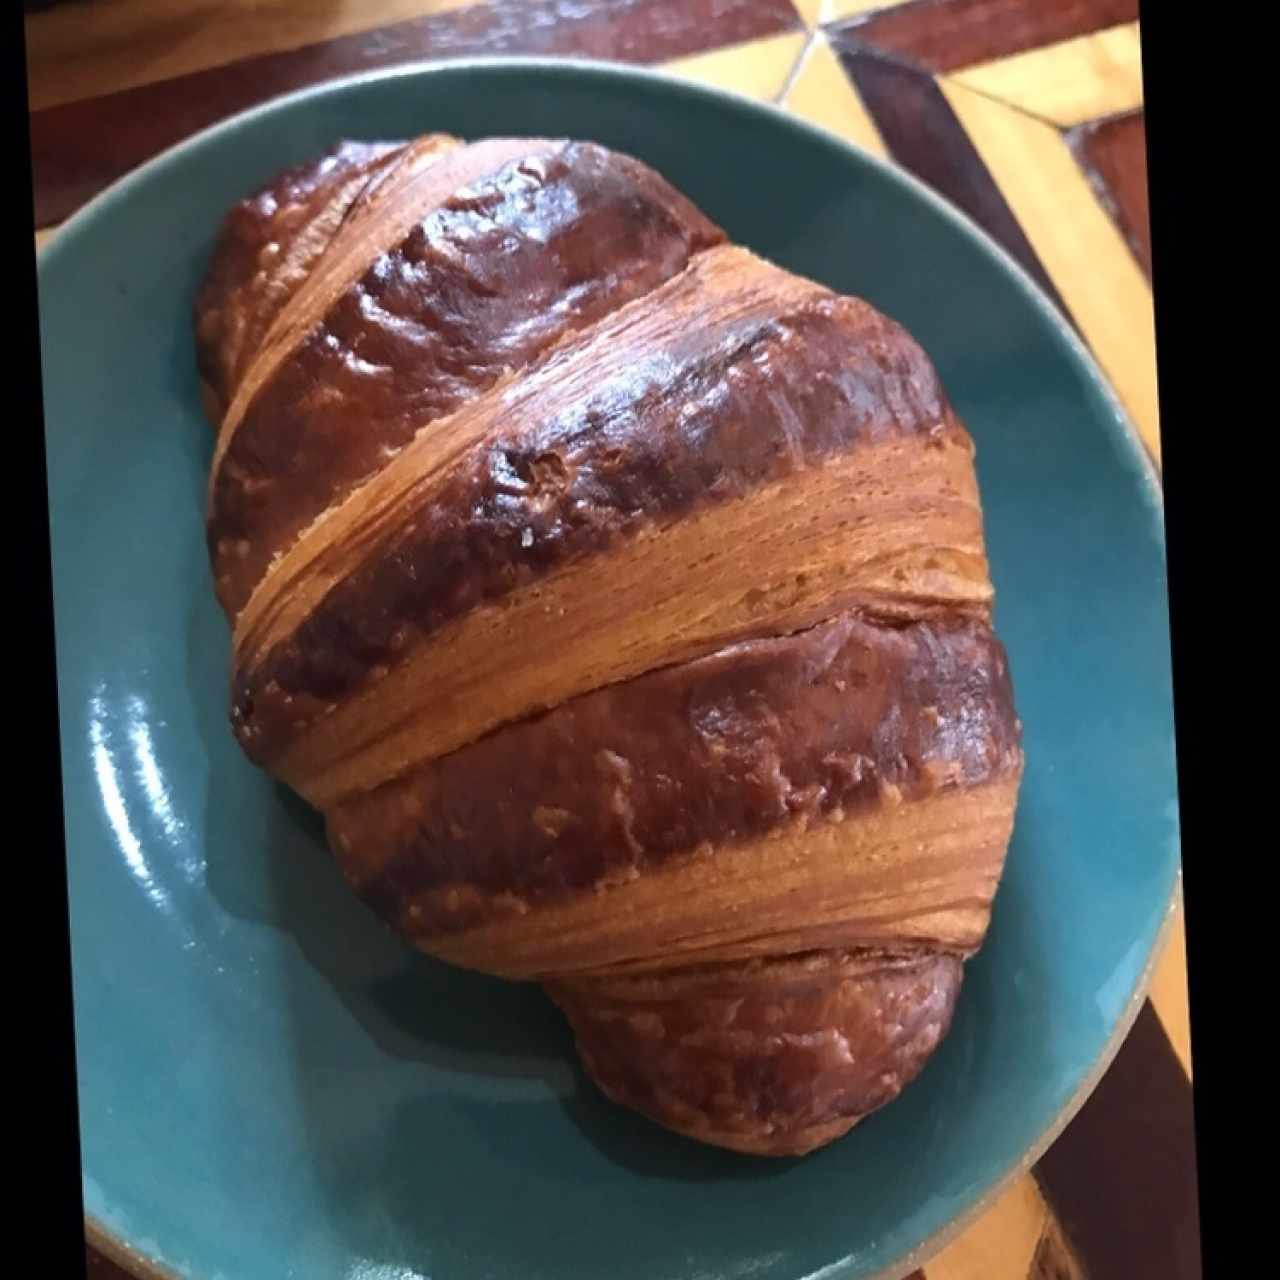 Pastries - Croissants